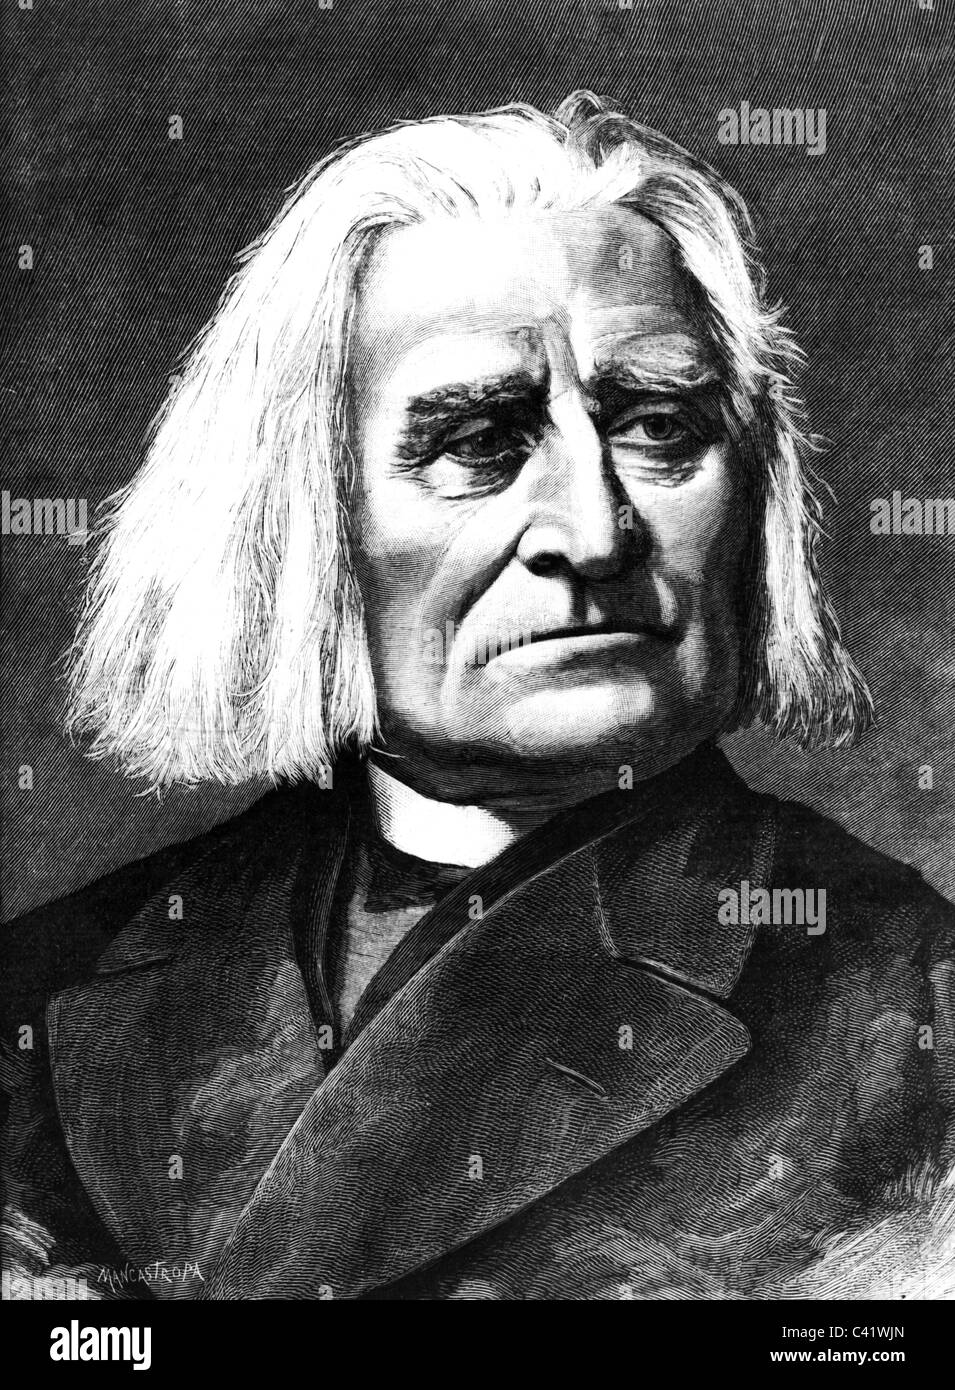 Liszt, Franz, 22.10.11 - 31. 7.1886, ungarischer Komponist, Porträt, Holzgravur, 19. Jahrhundert, Stockfoto